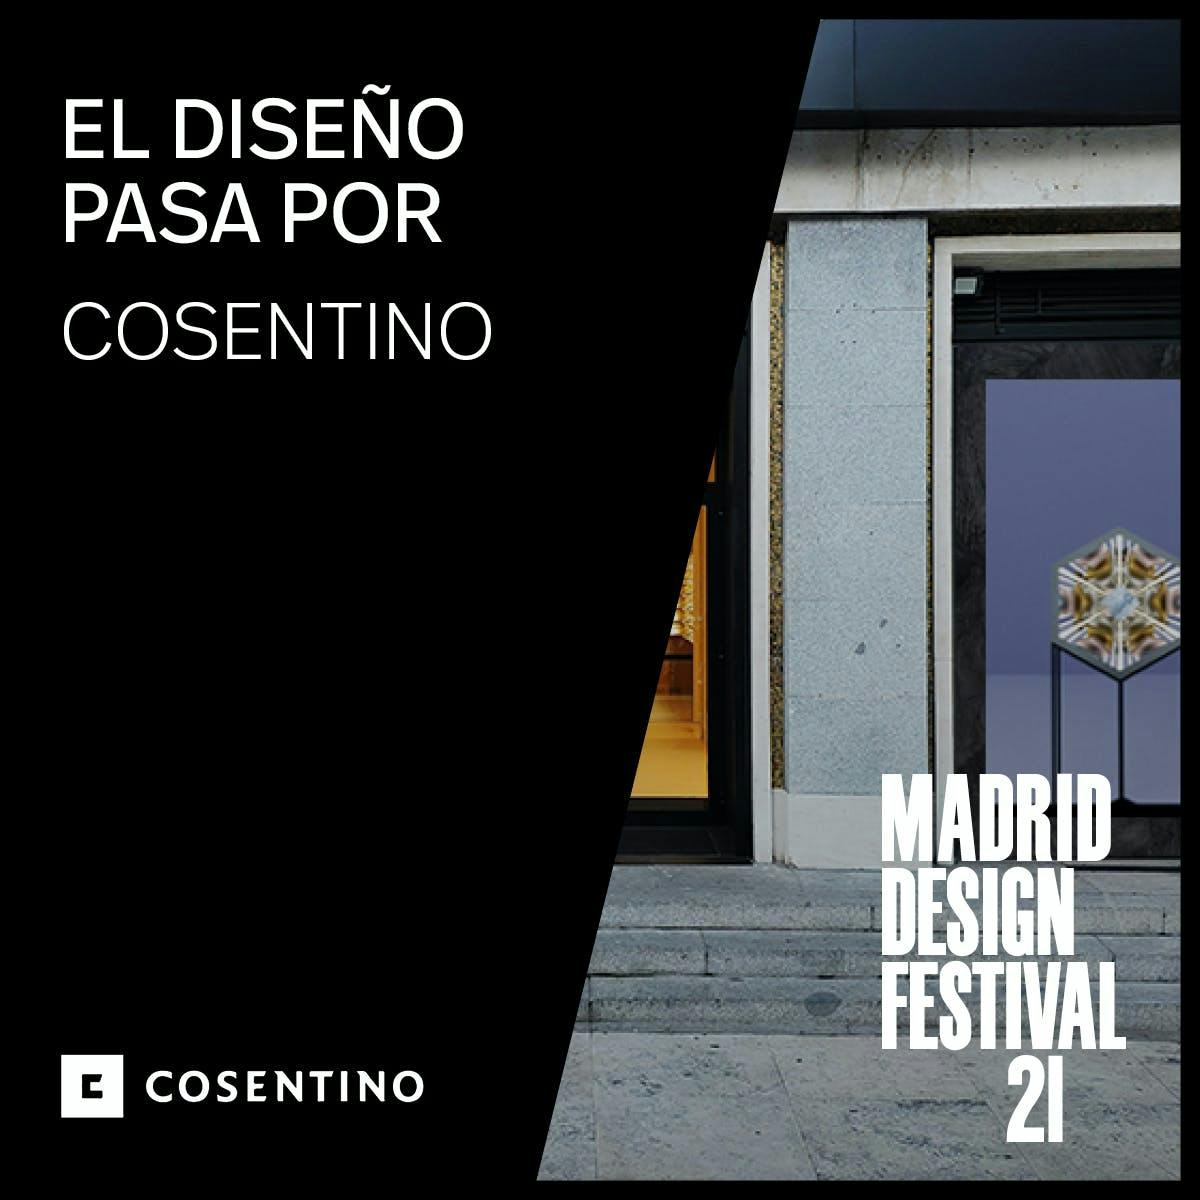 Image 33 of MDPartner COSENTINO1 1 5 in Cosentino at the Madrid Design Festival 2021 - Cosentino